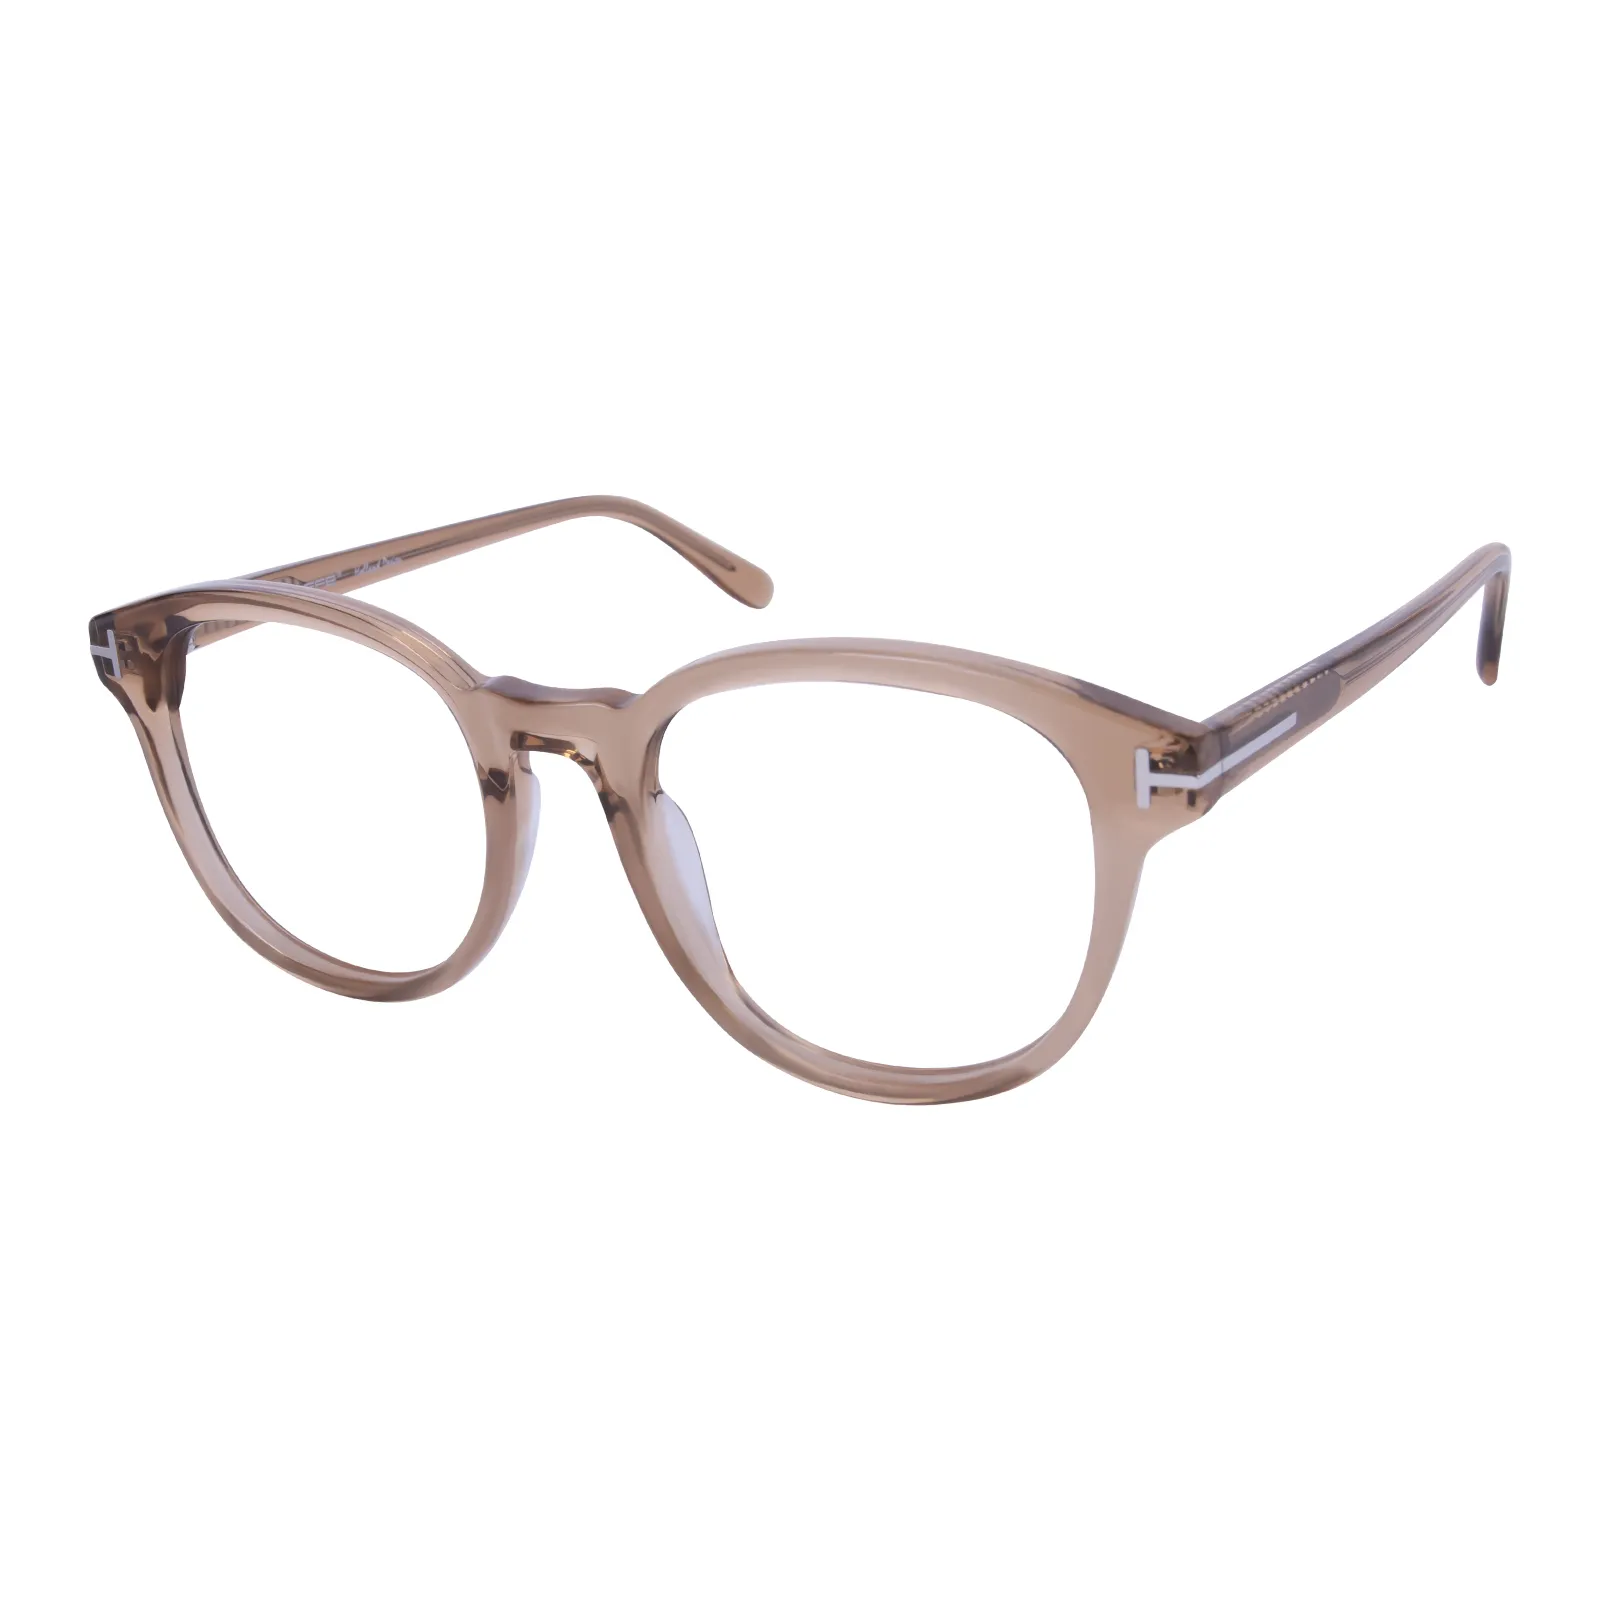 Averil - Square Brown Glasses for Men & Women